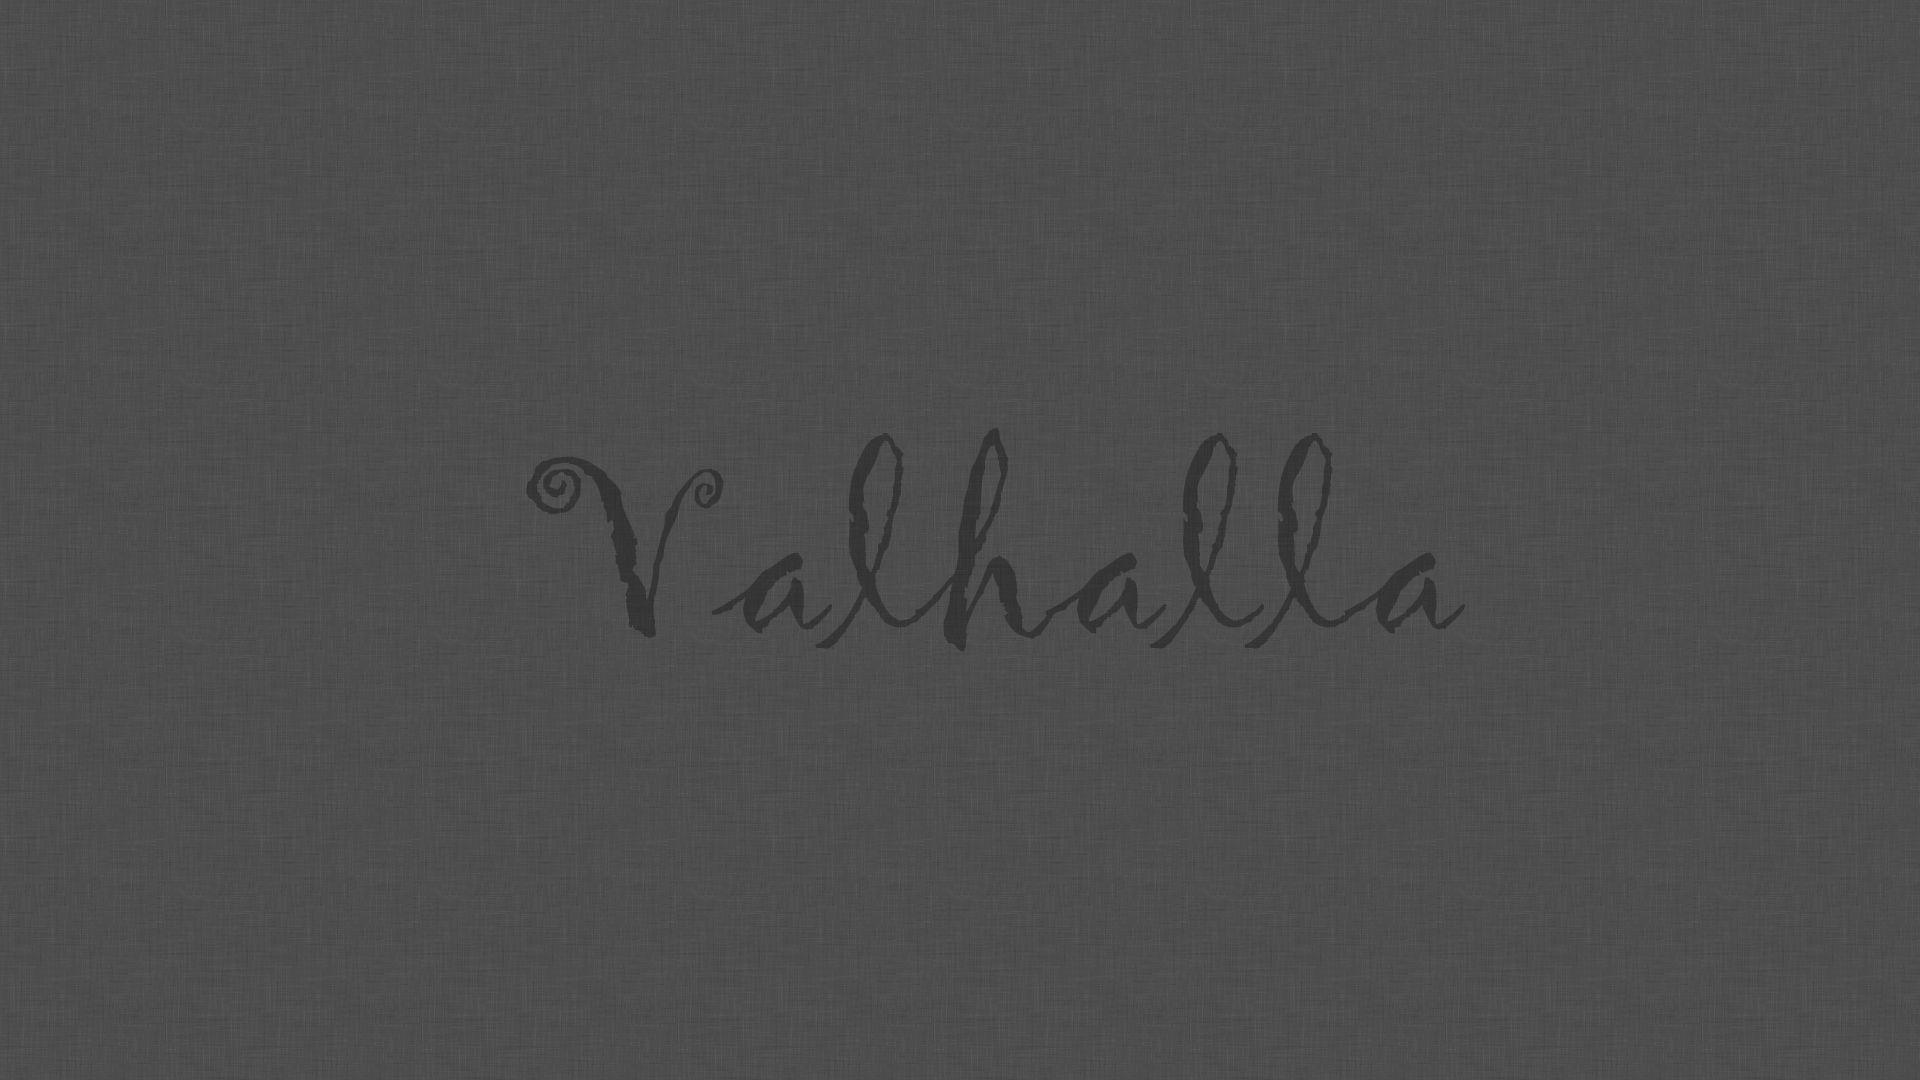 Valhalla Forum